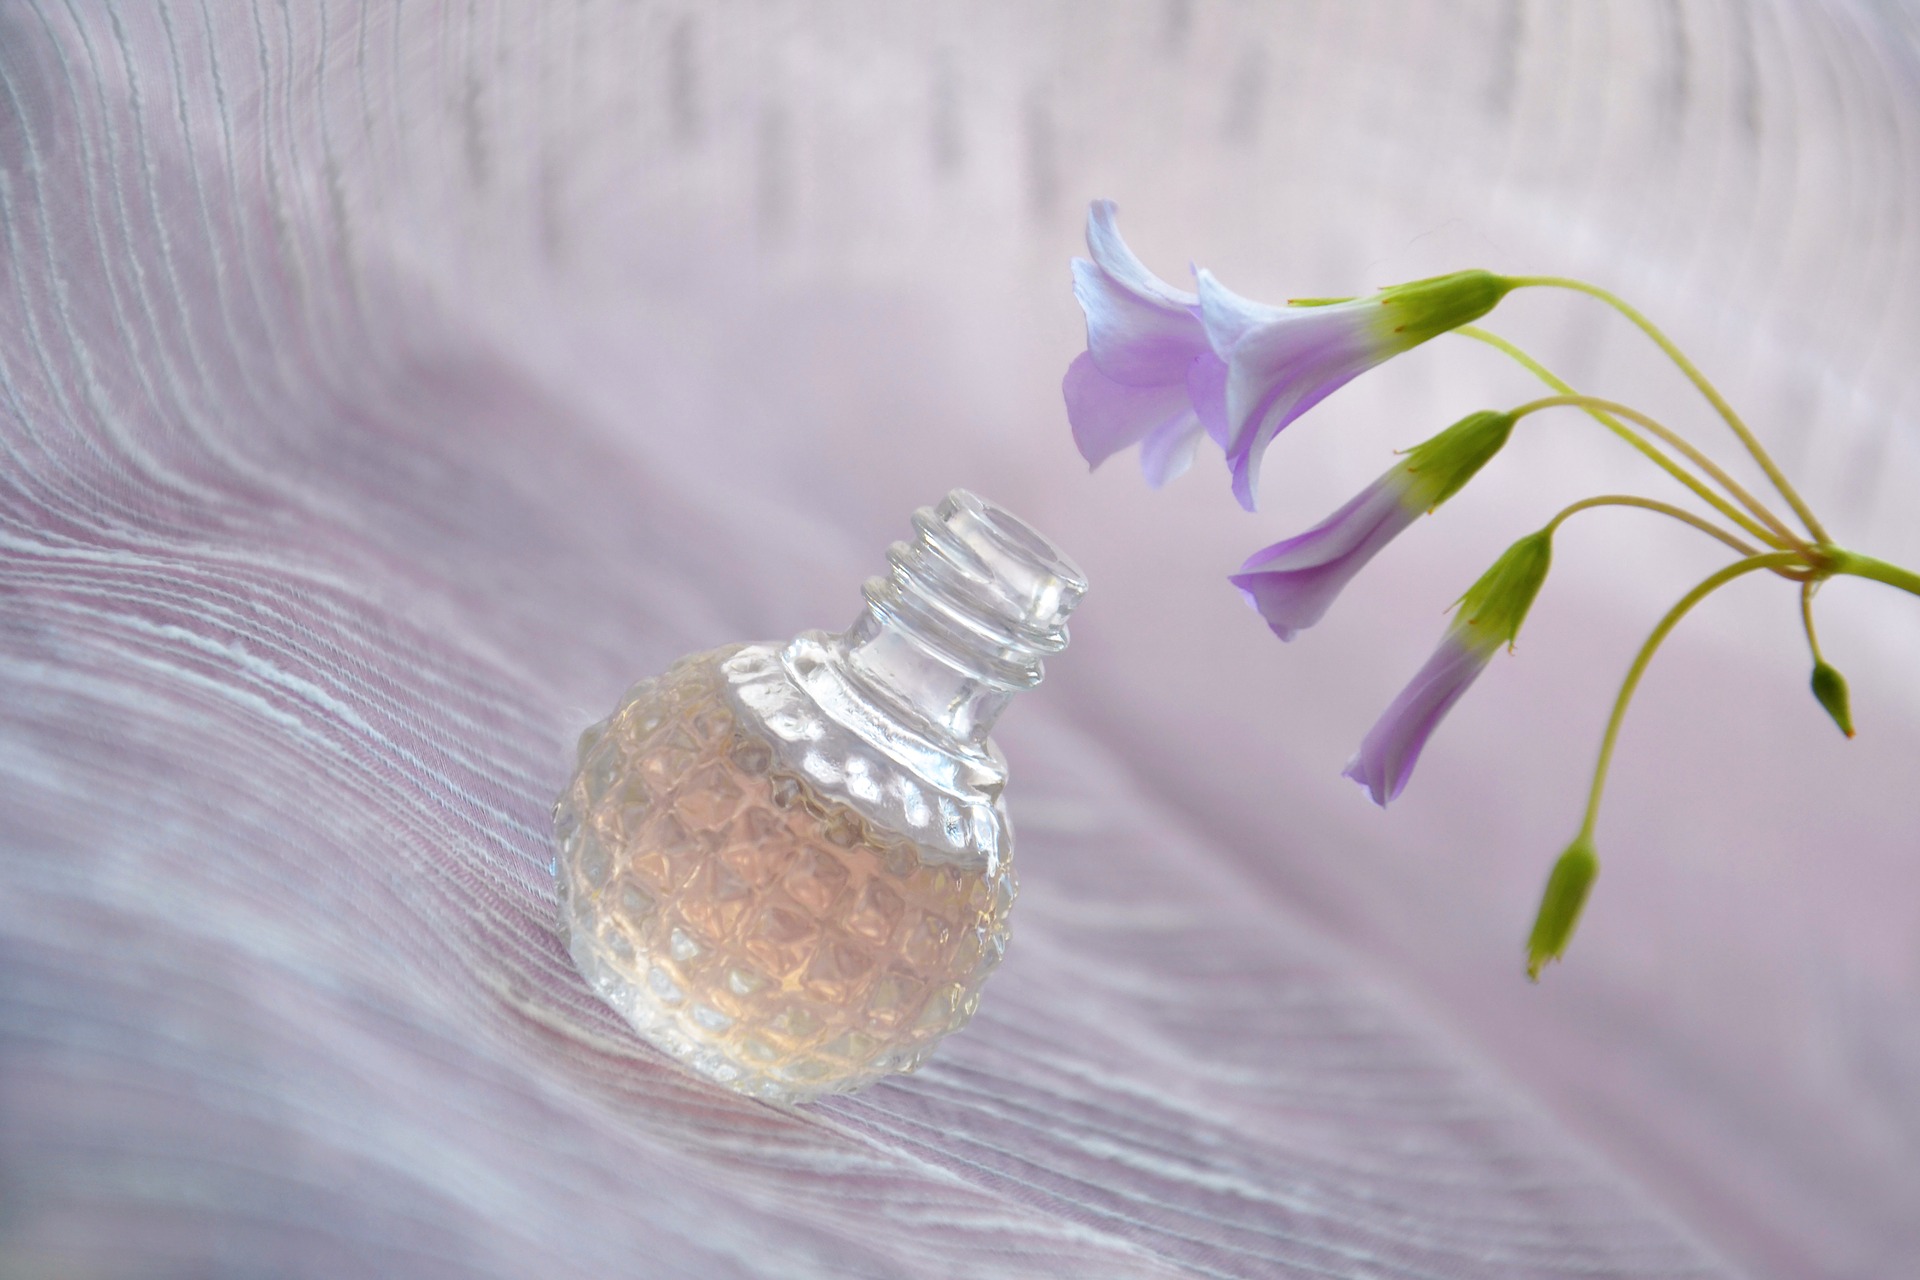 Cerruti 1881 – cena, rodzaje i zapachy wód perfumowanych